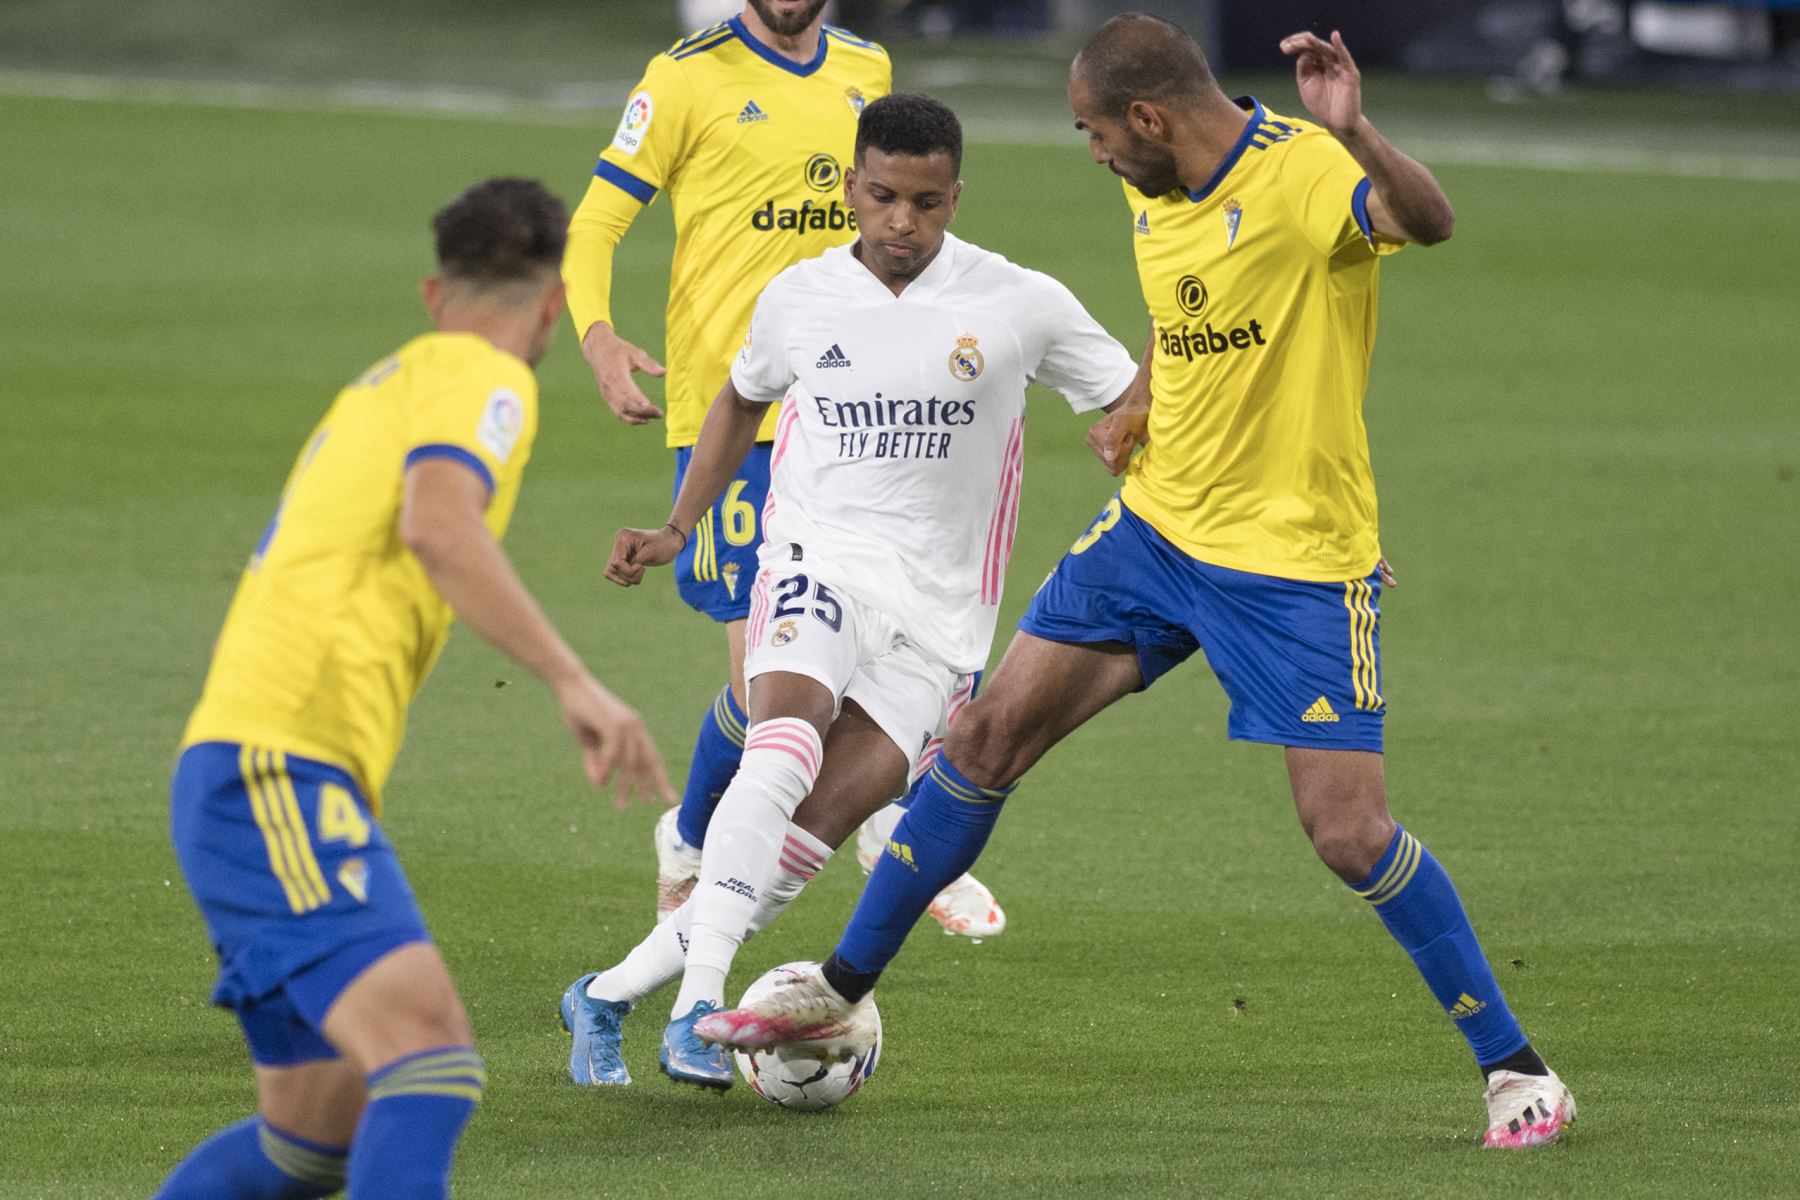 El delantero brasileño del Real Madrid Rodrygo desafía al defensor español de Cádiz, Rafael "Fali" Giménez, durante el partido de fútbol de la Liga española. Foto: AFP